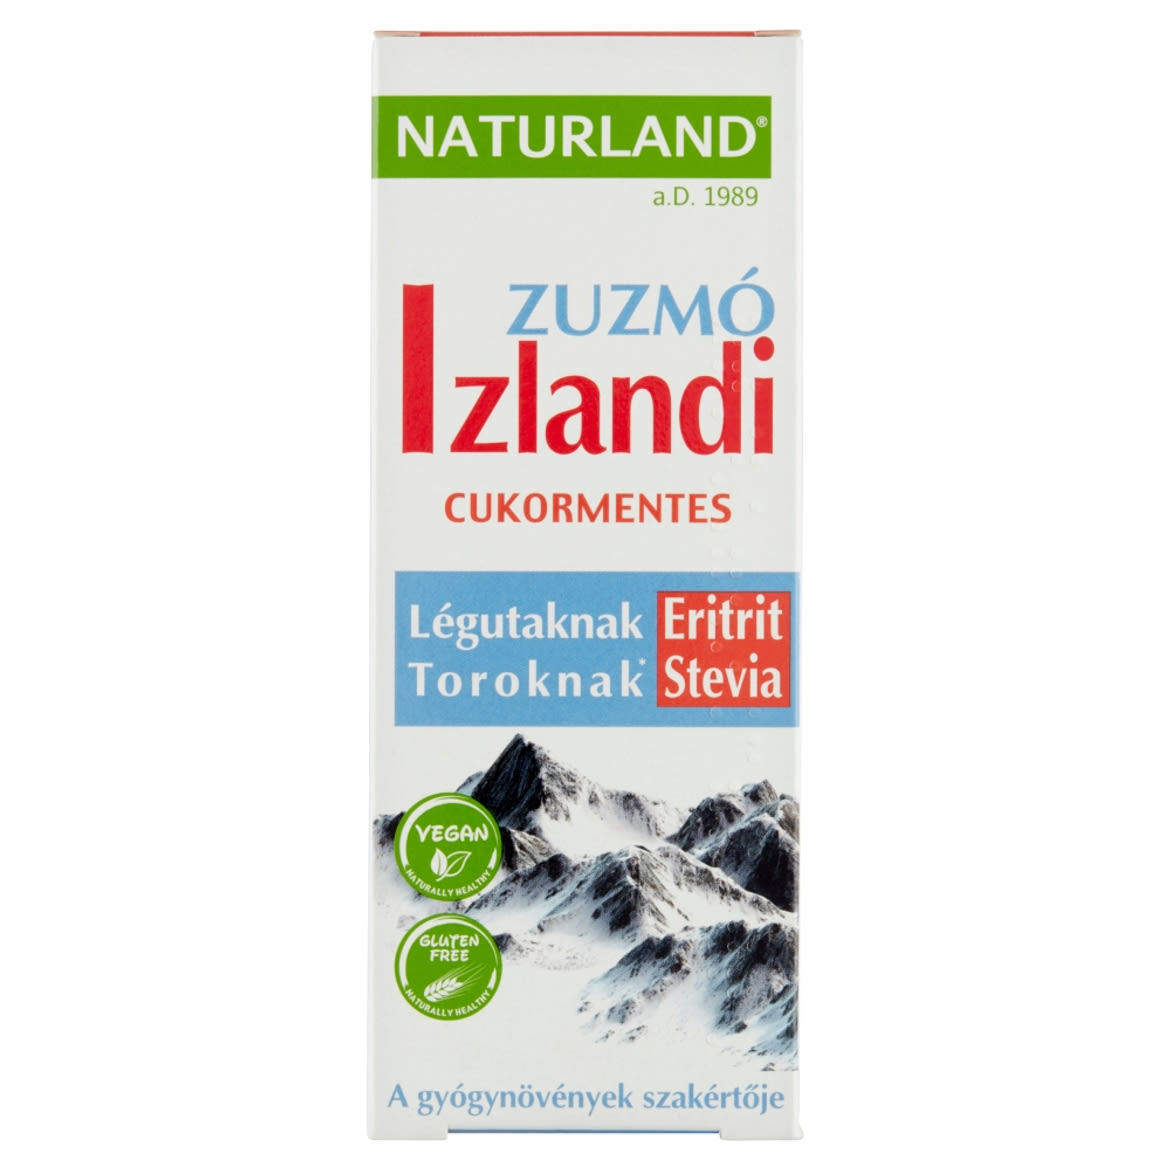 Naturland izlandi zuzmó kivonatot tartalmazó folyékony étrend-kiegészítő édesítőszerekkel